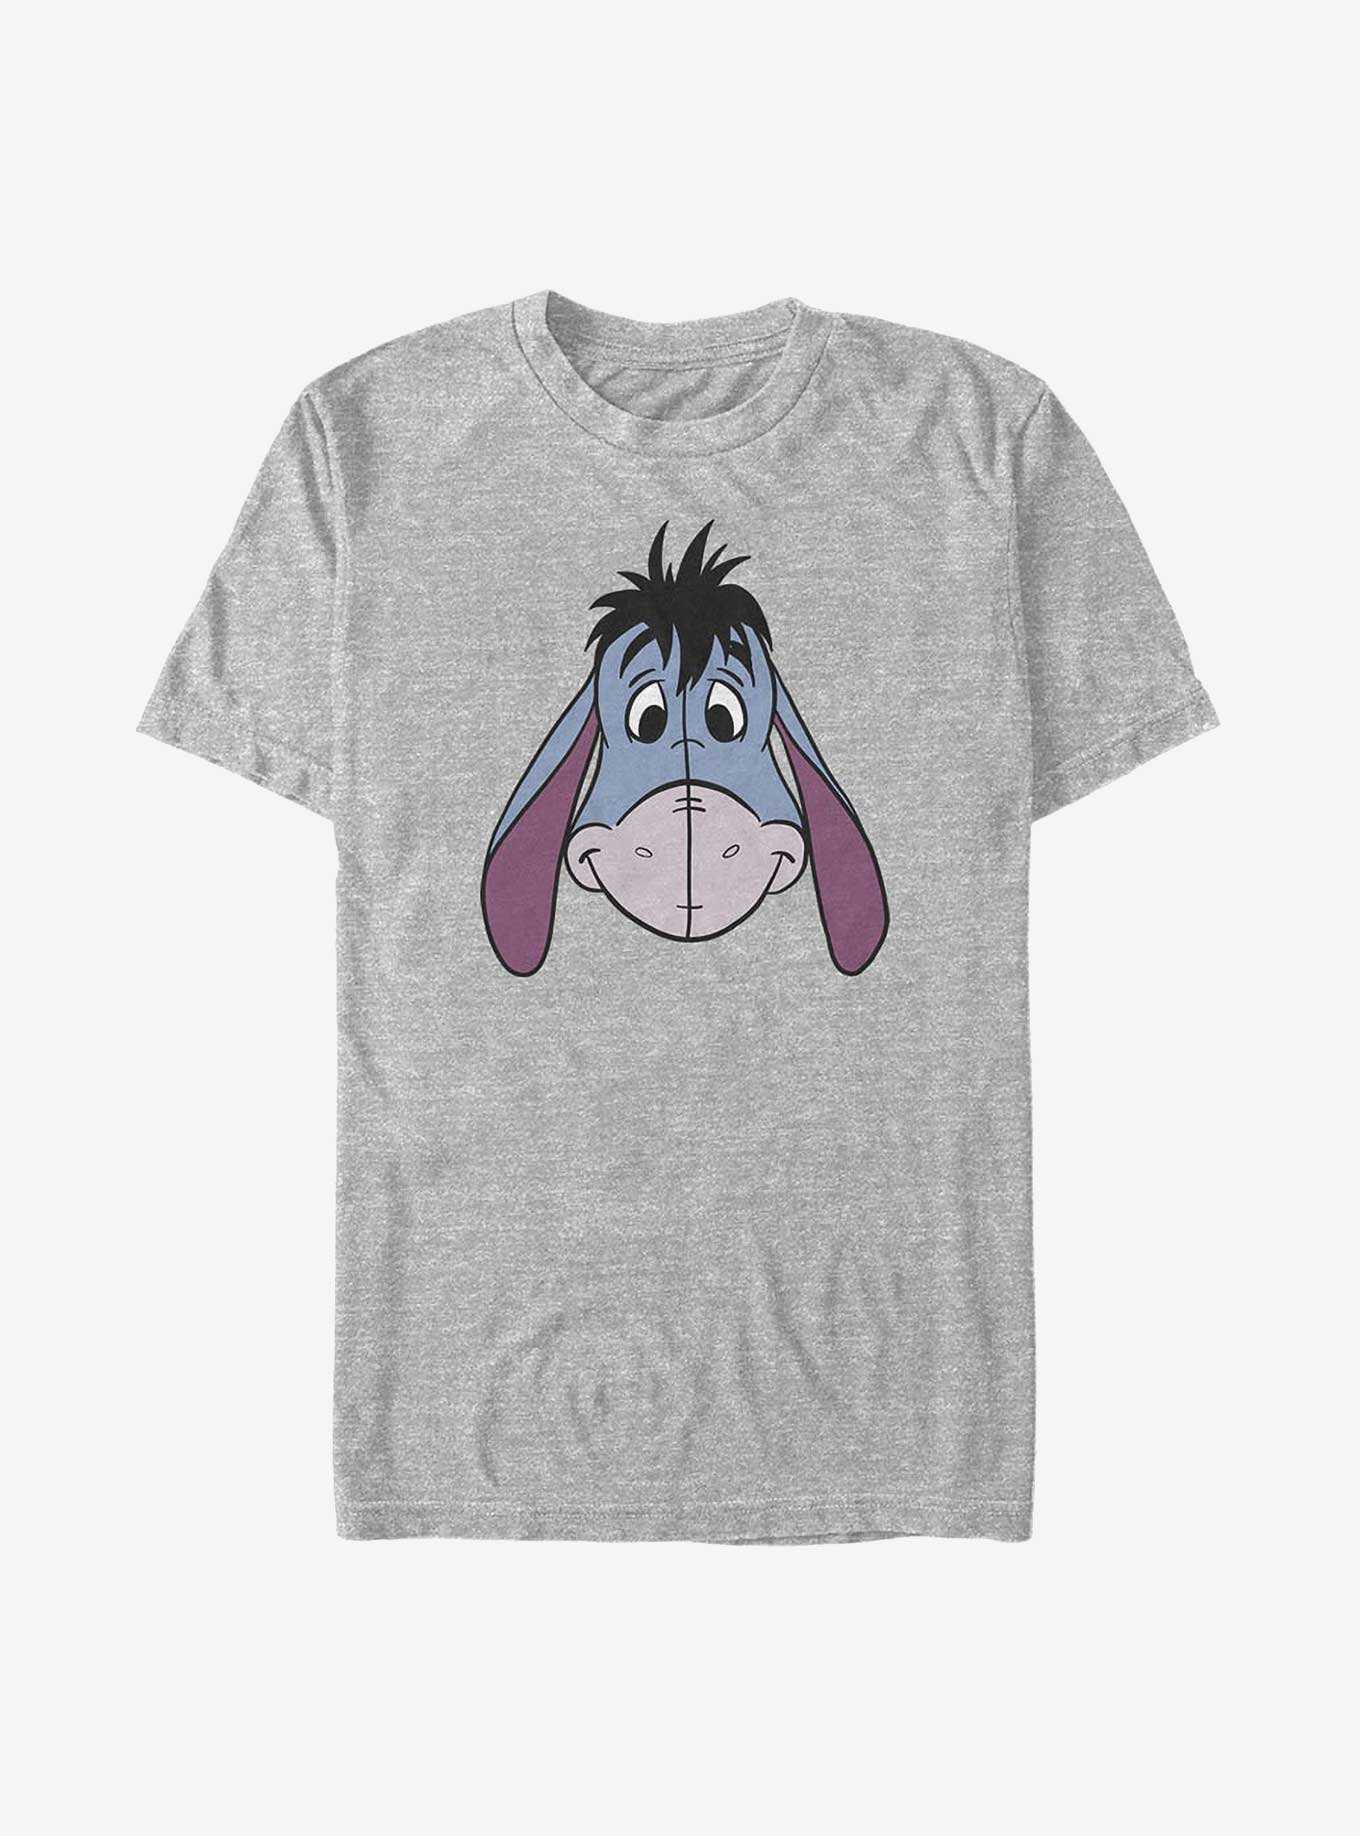 Disney Winnie The Pooh Eeyore Big Face Big & Tall T-Shirt, , hi-res